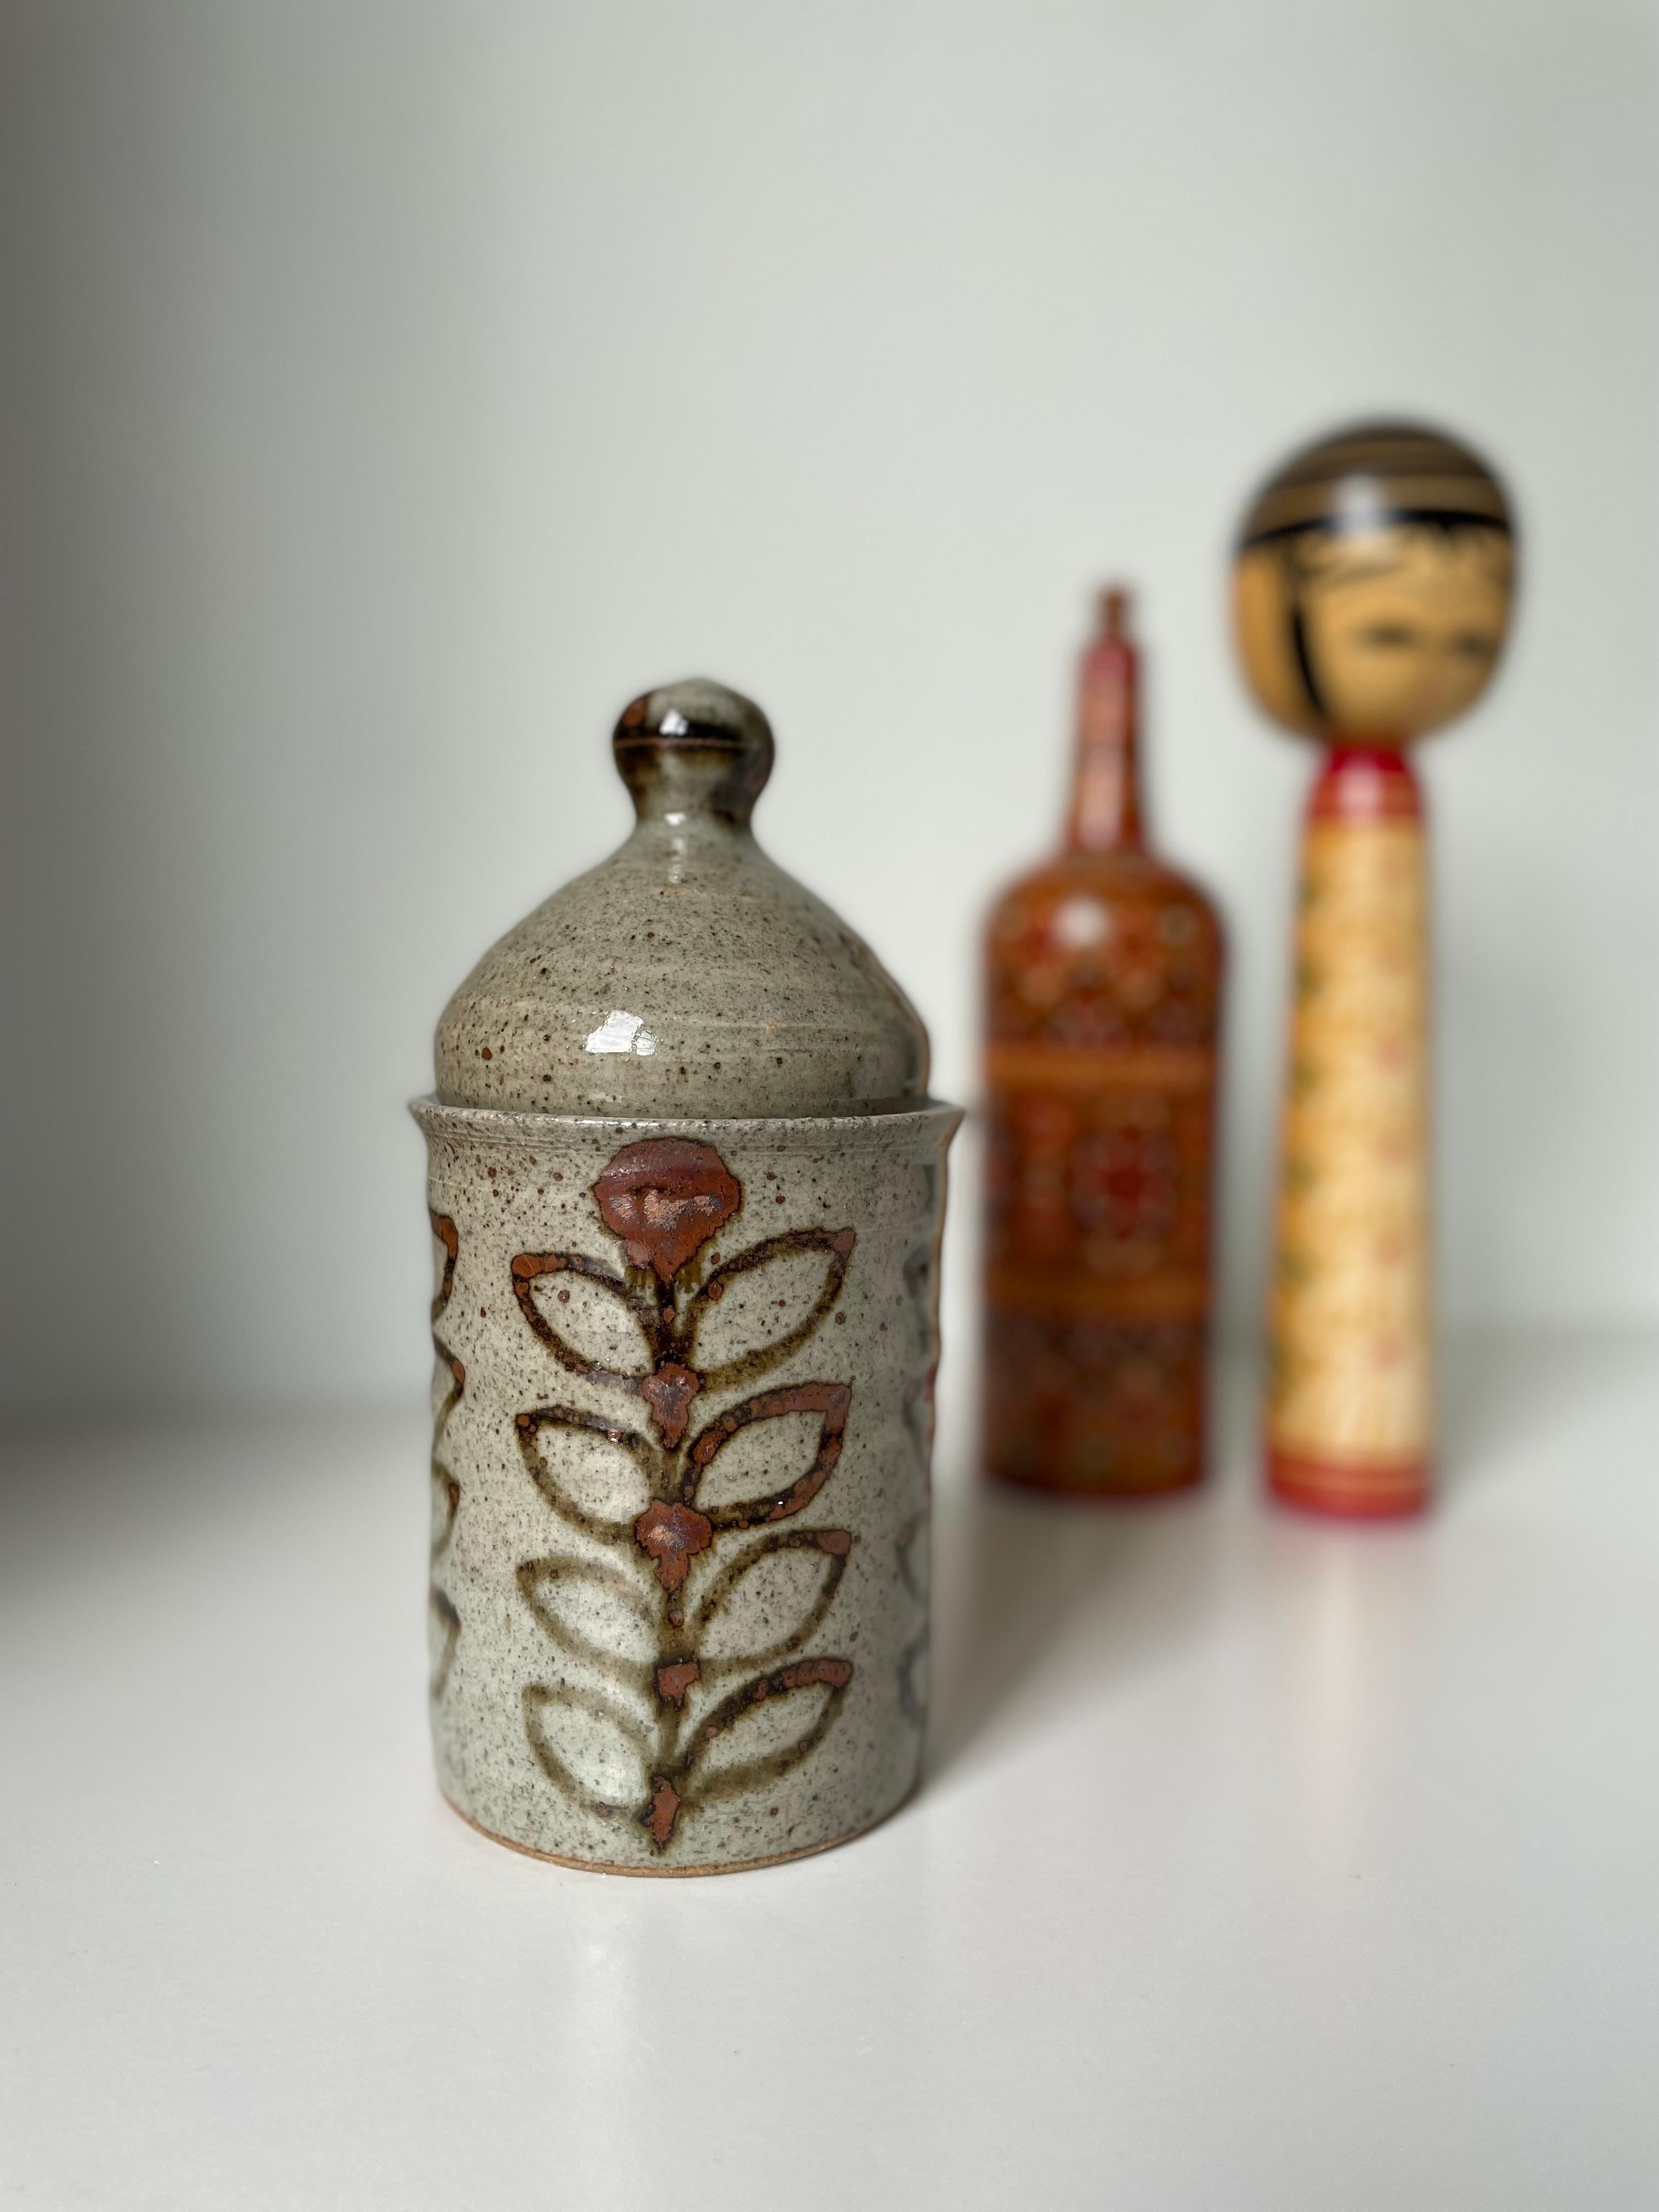 Französischer handwerklicher Vintage-Keramikzylinder mit weich geformtem Deckel. Handgemalte stilisierte Blumendekorationen in rostbraunen Farben auf der sandgrauen, glänzenden Glasur. Unter dem Sockel gestempelt und signiert. Schöner